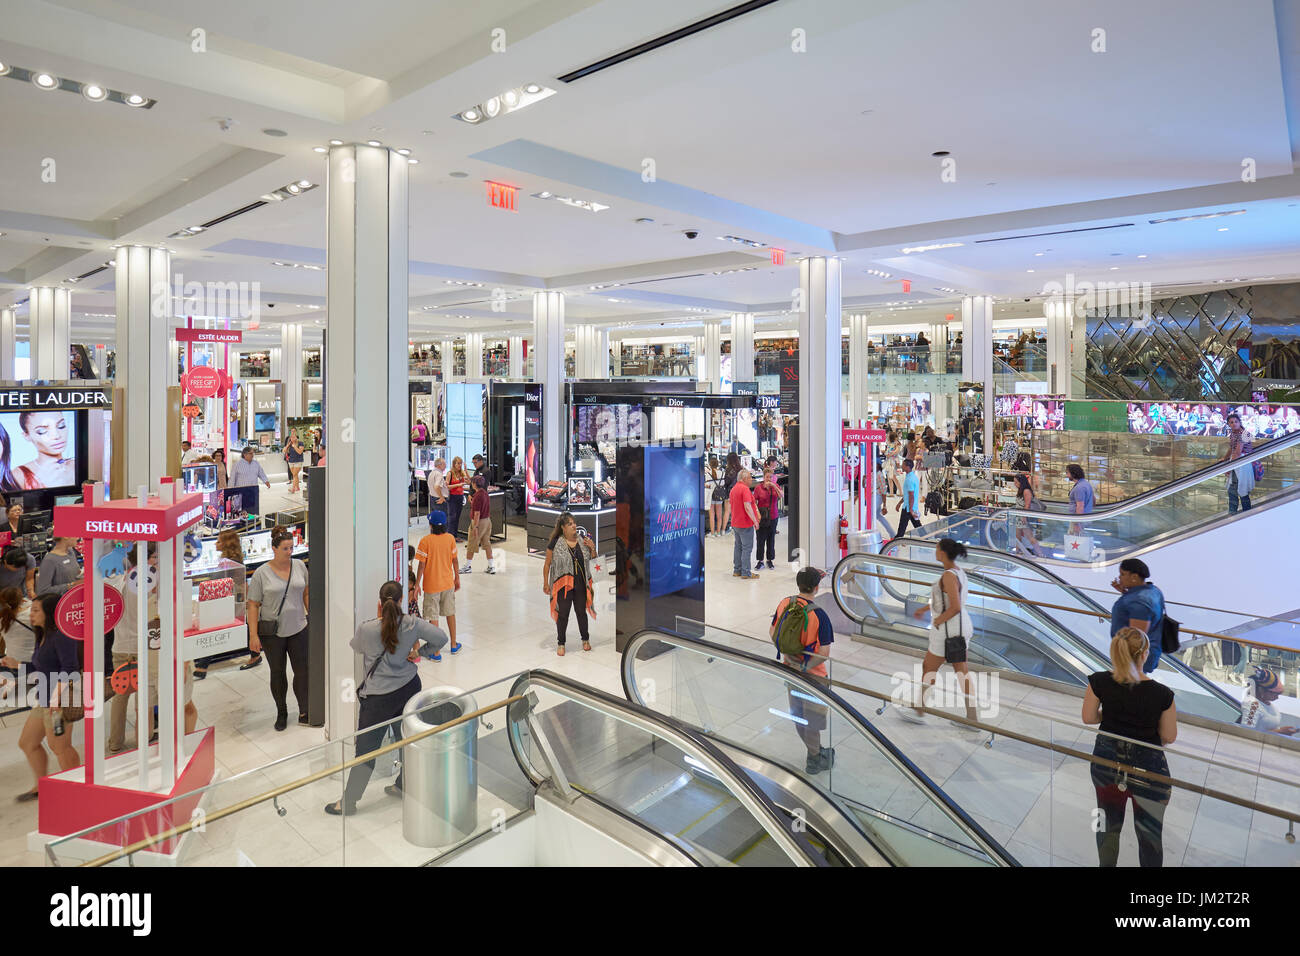 NEW YORK - 10 settembre: magazzino Macy's interno, area cosmetica con scale mobili il 10 settembre 2016 a New York. Macy è più grandi DEGLI STATI UNITI Foto Stock